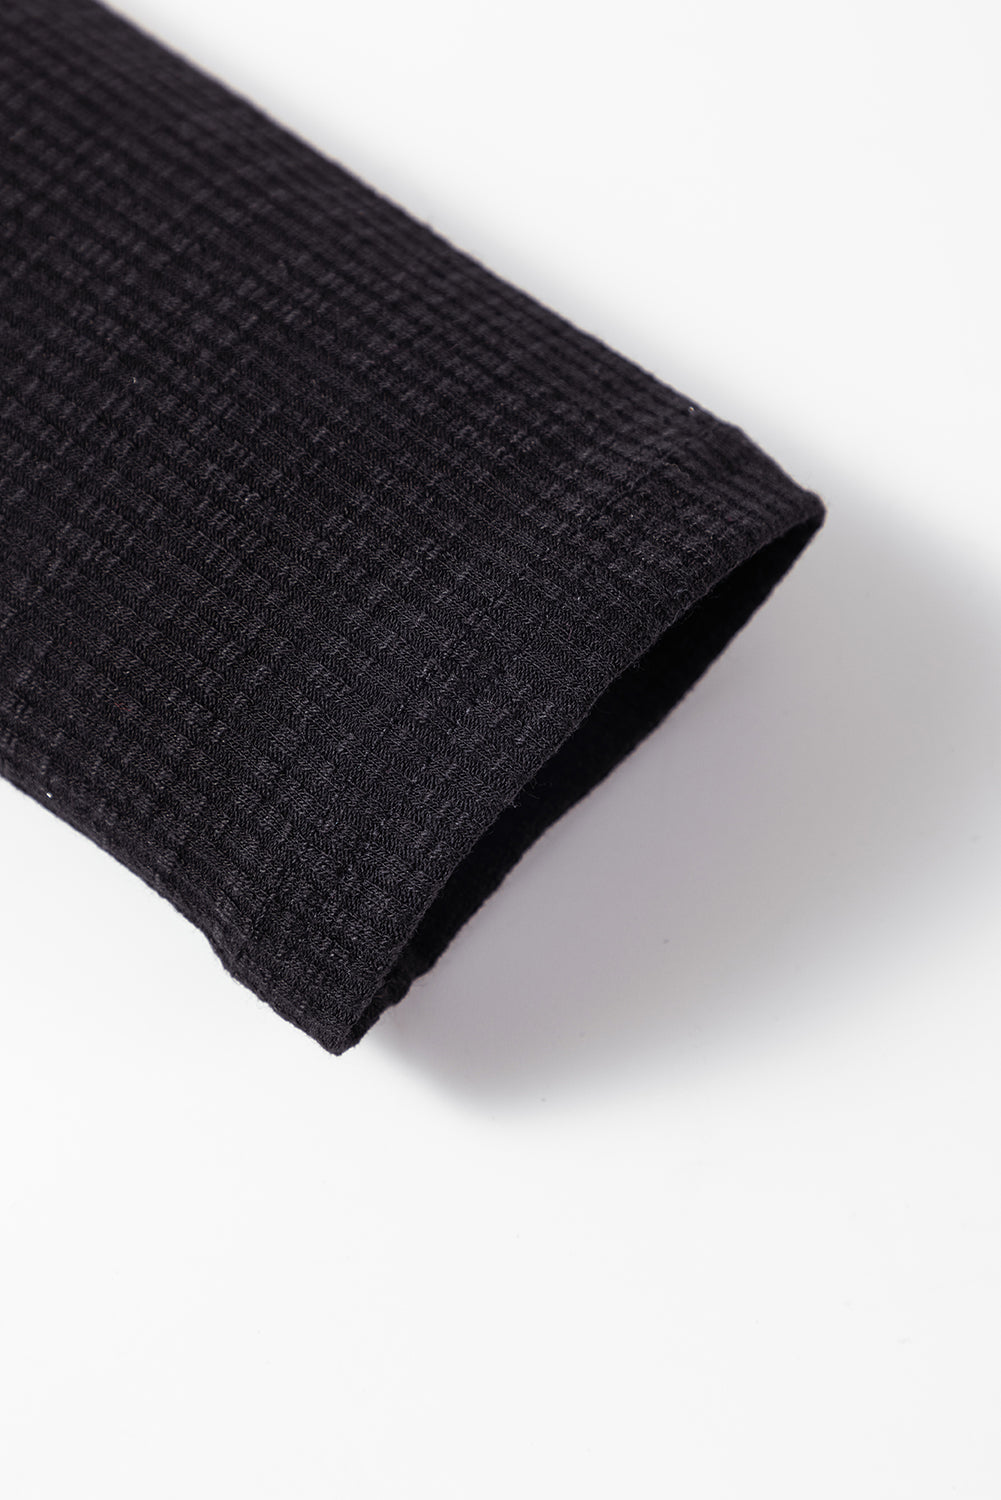 Haut noir à manches longues en tricot côtelé avec boutons-pression